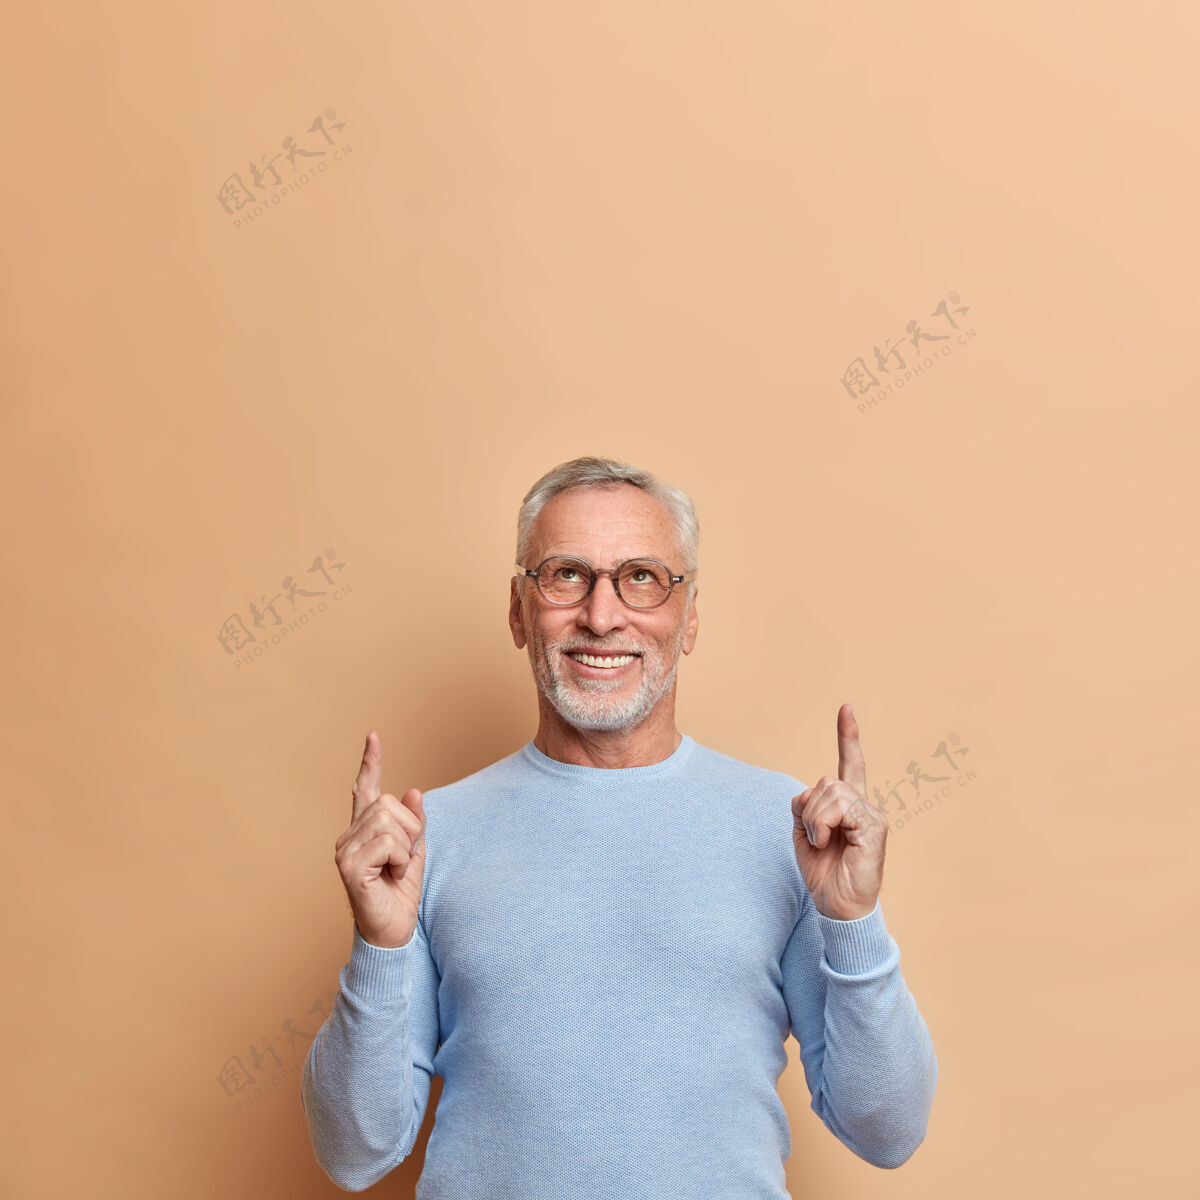 眼镜自信积极的成熟男人指着上面的空白处演示头顶上的广告 穿着休闲的蓝色套头衫 隔着棕色的墙壁镜头男人高兴